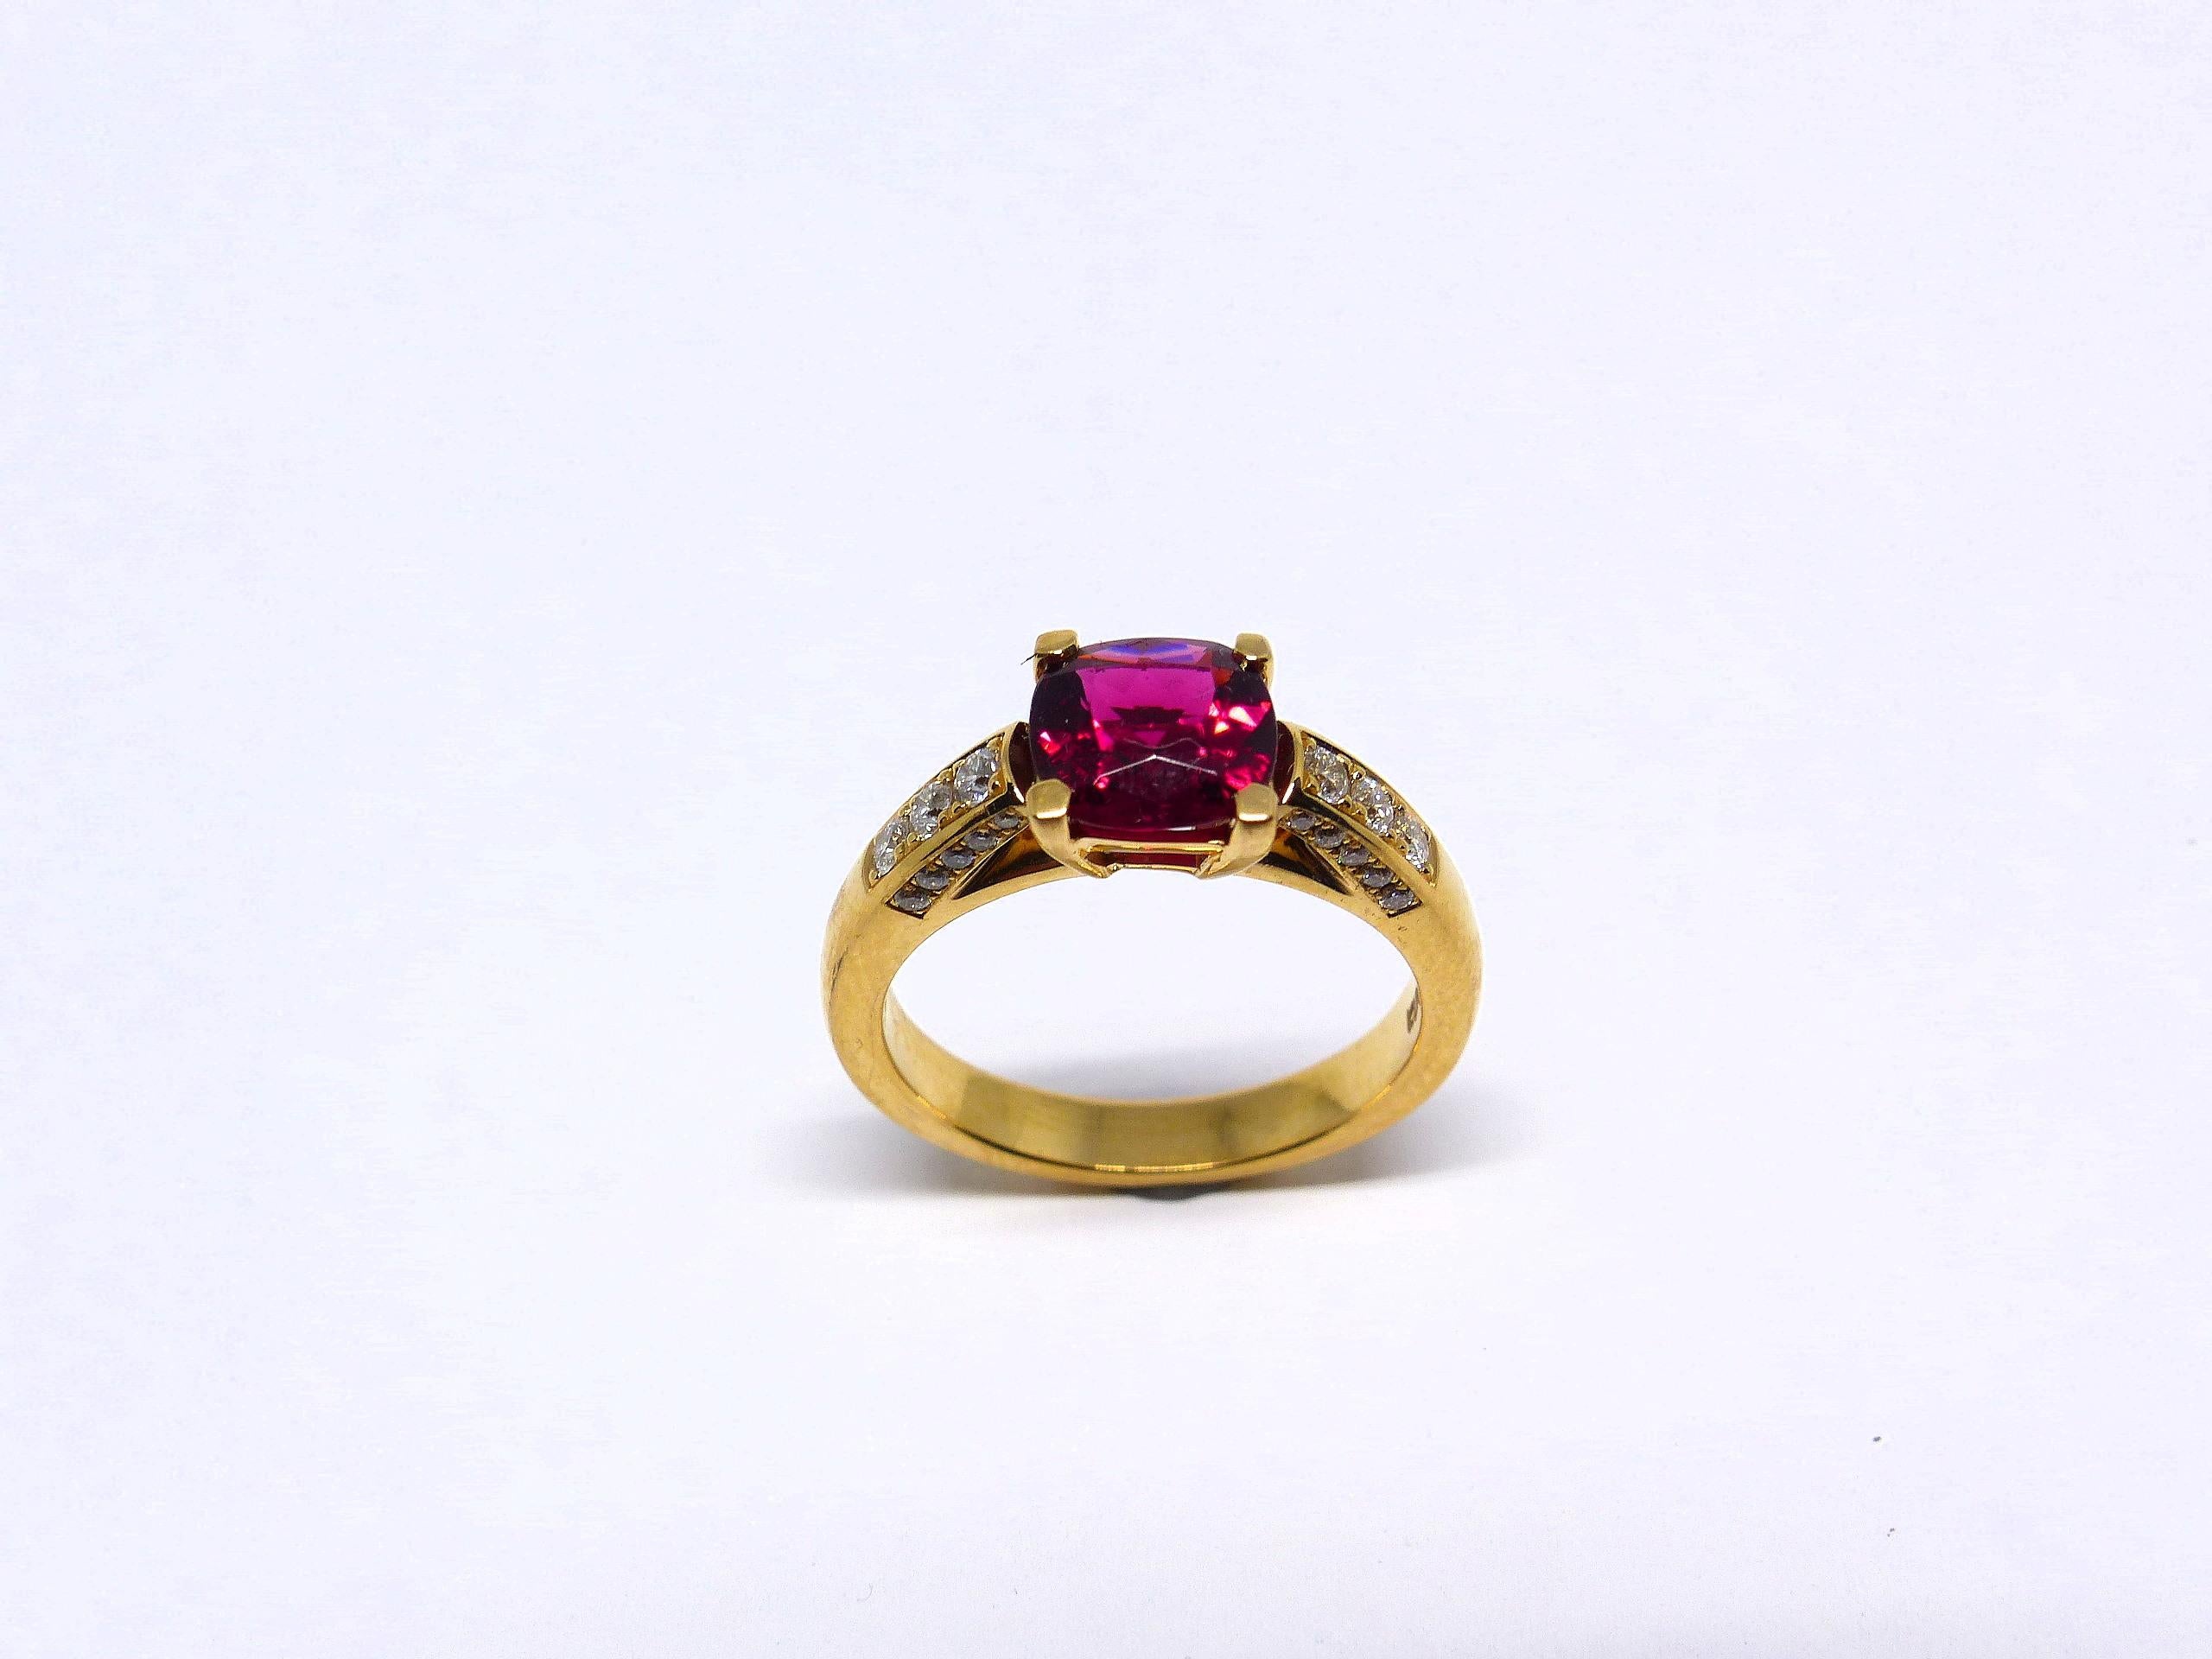 Thomas Leyser est réputé pour ses créations de bijoux contemporains utilisant des pierres précieuses fines. 

Cette bague en or rose 18 carats (6,62 g) est sertie d'une rubellite fine (facettée, coussin, 7,5 mm, 1,80 ct) et de 26 diamants (taille